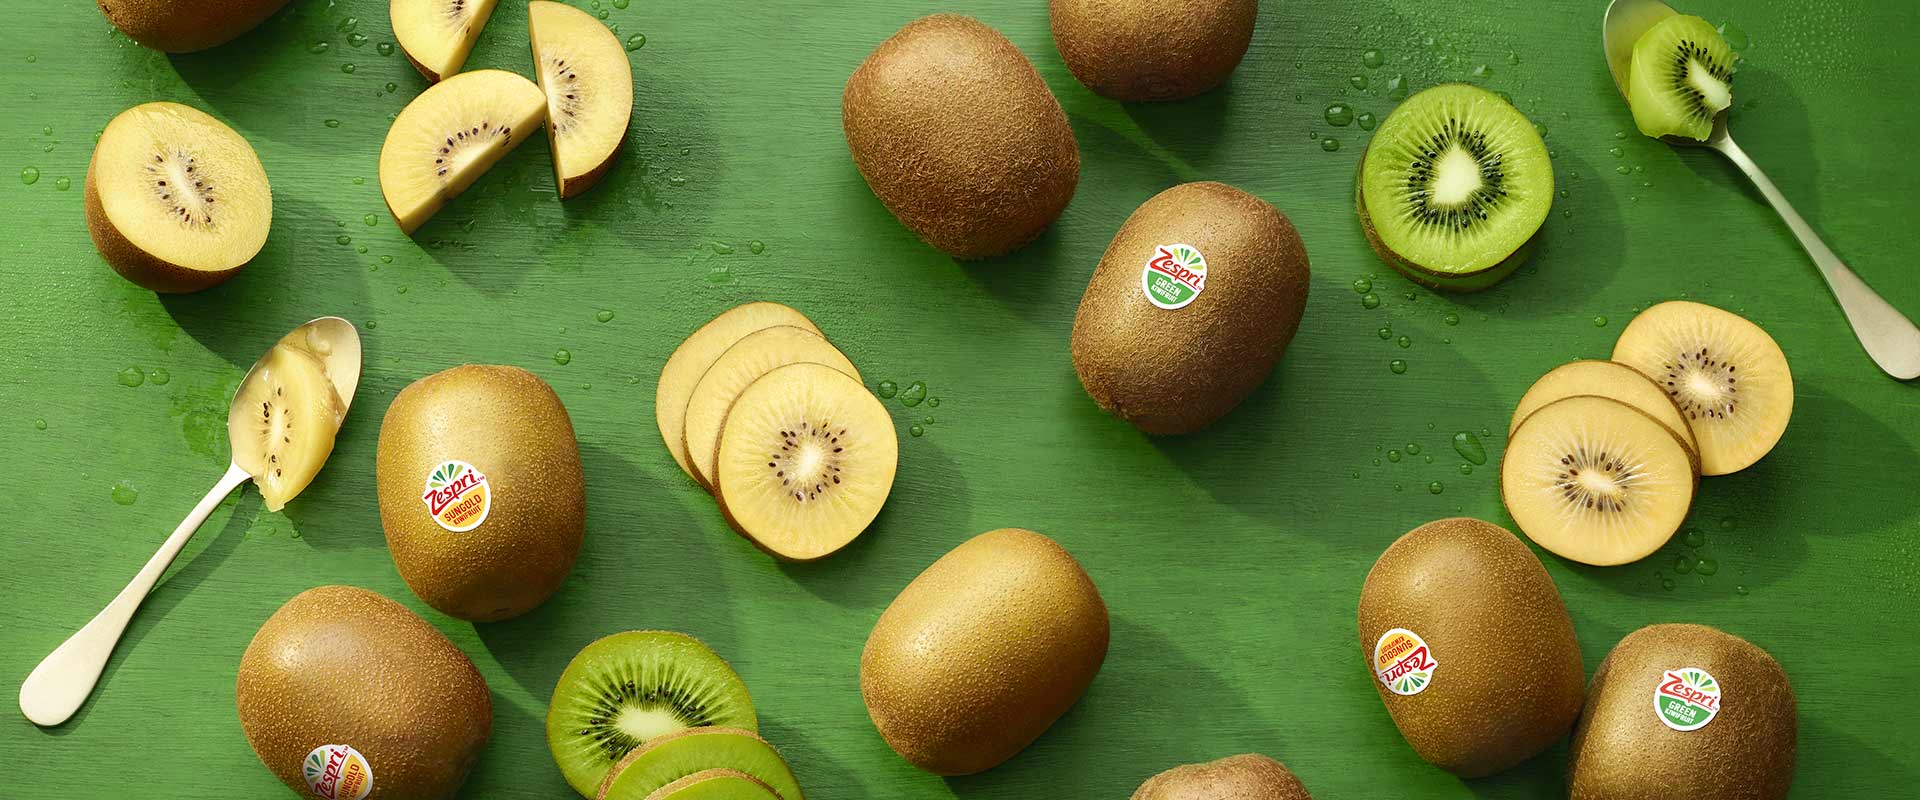 10 eigenschappen en voordelen van kiwi’s - Header